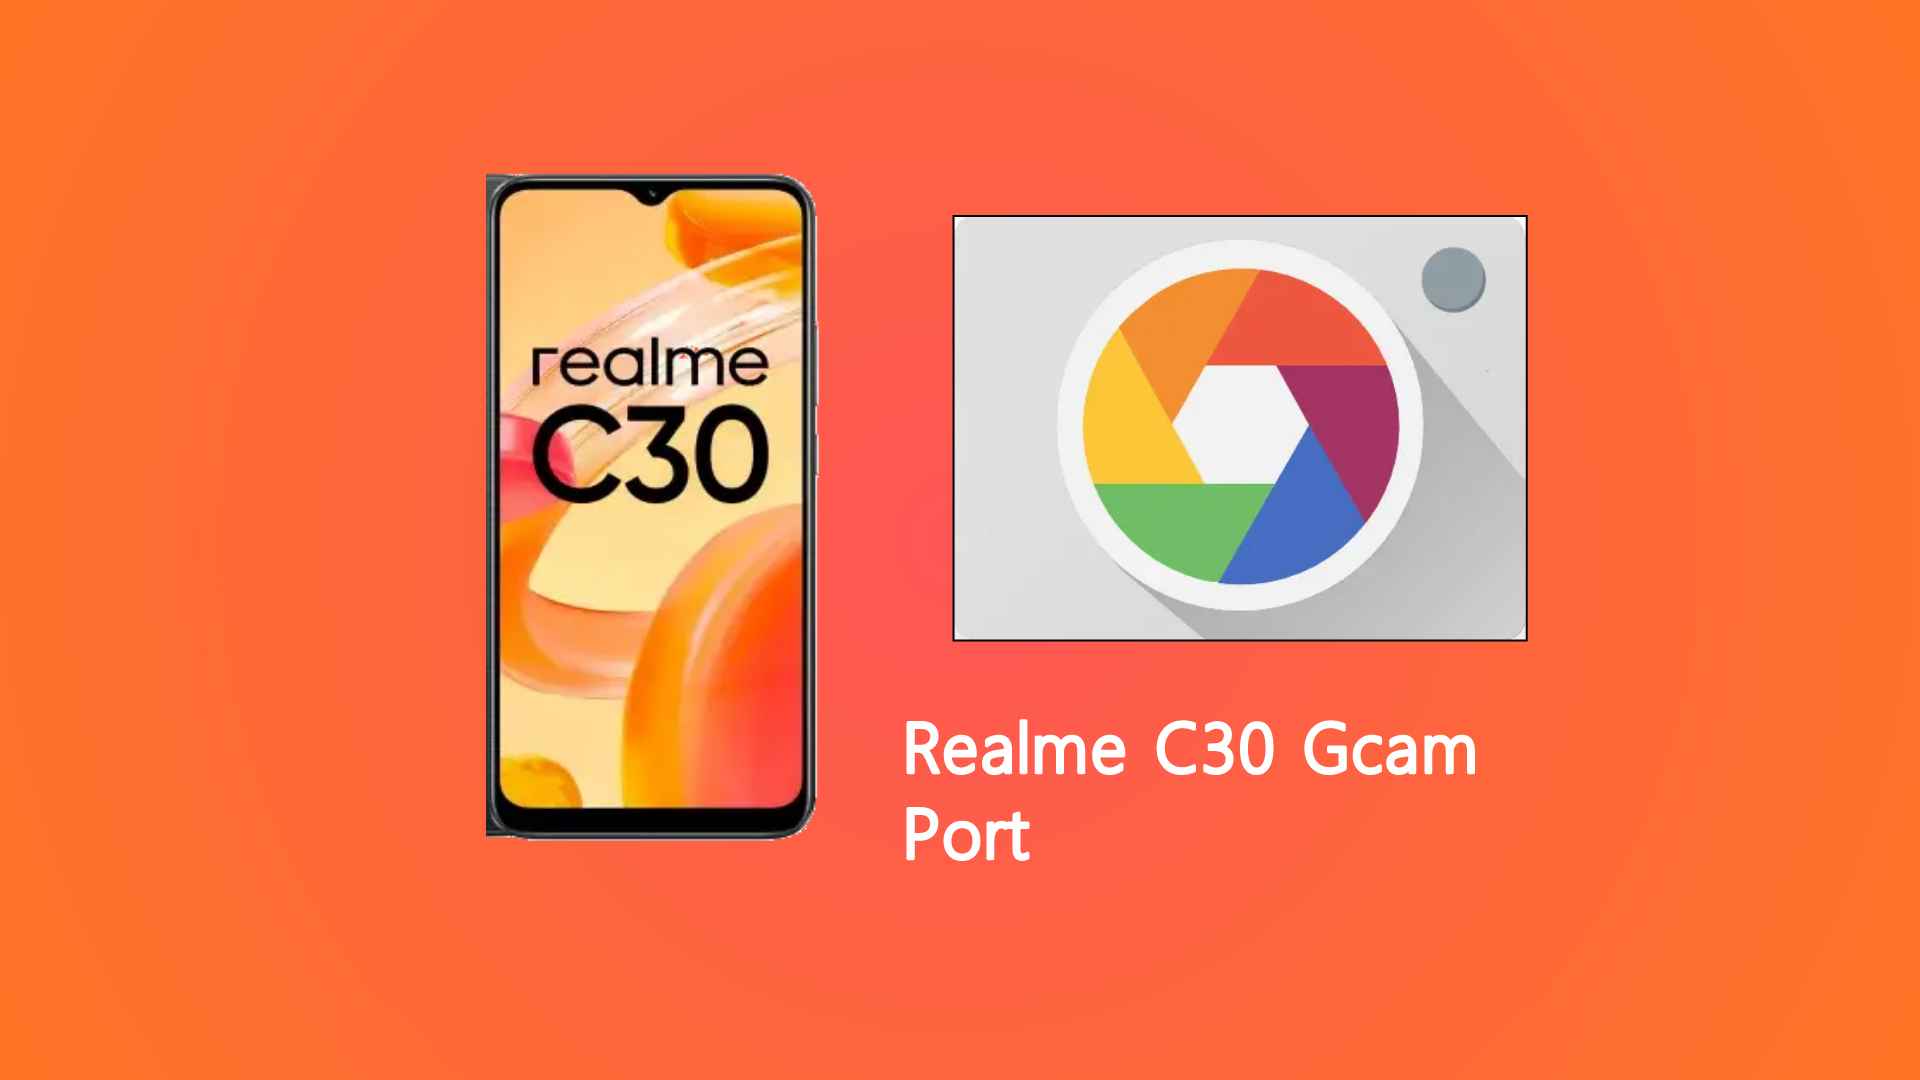 Realme C30 Gcam Port